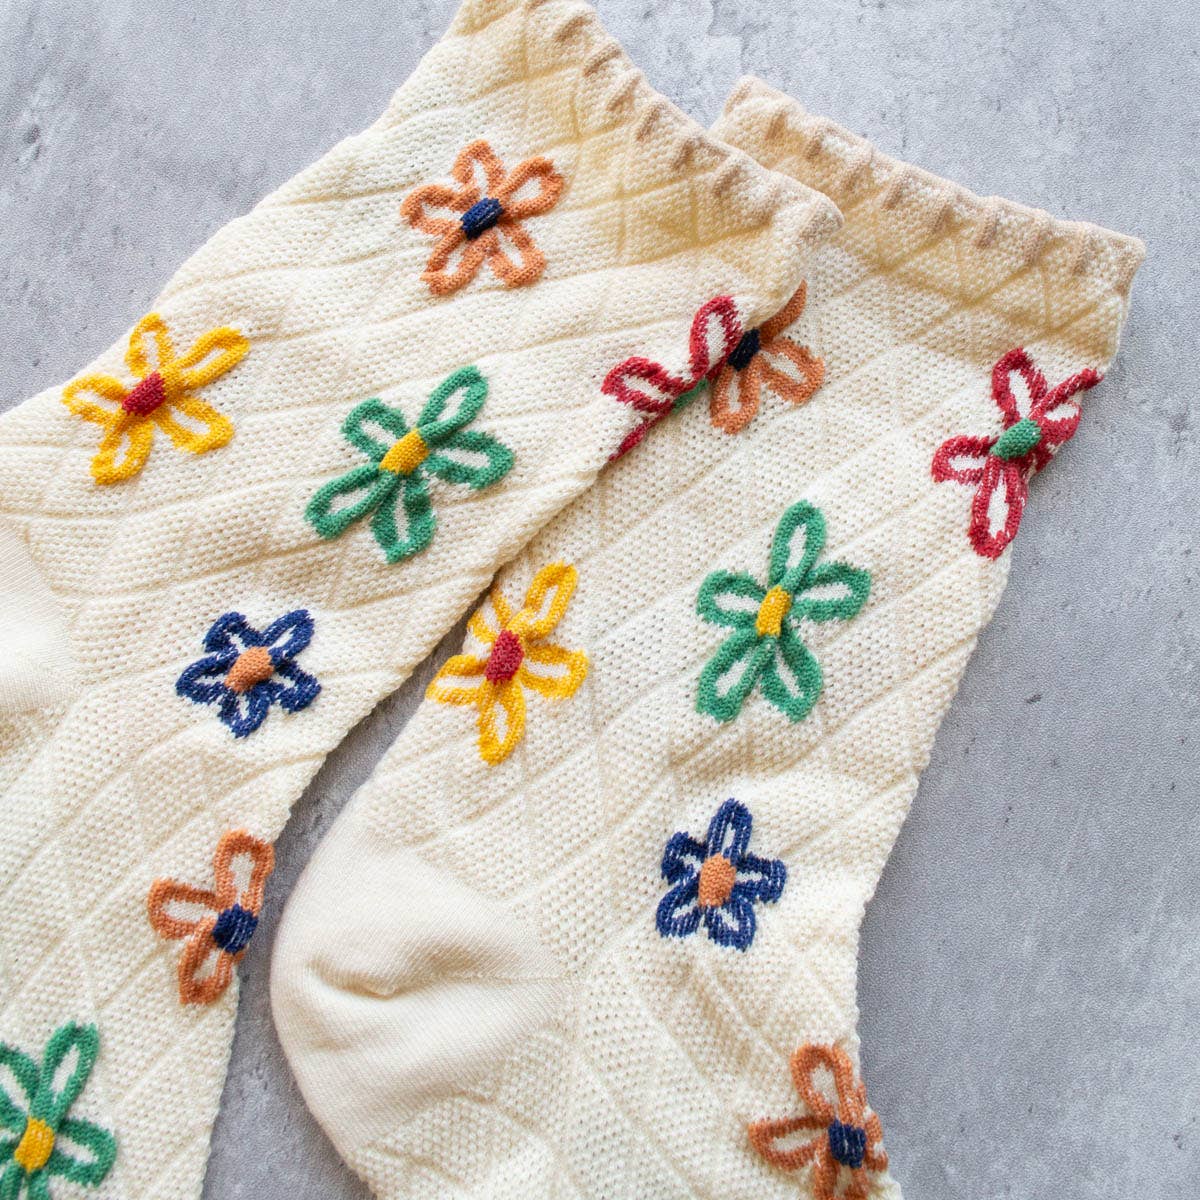 Vintage Floral Socks: Mocha Brown